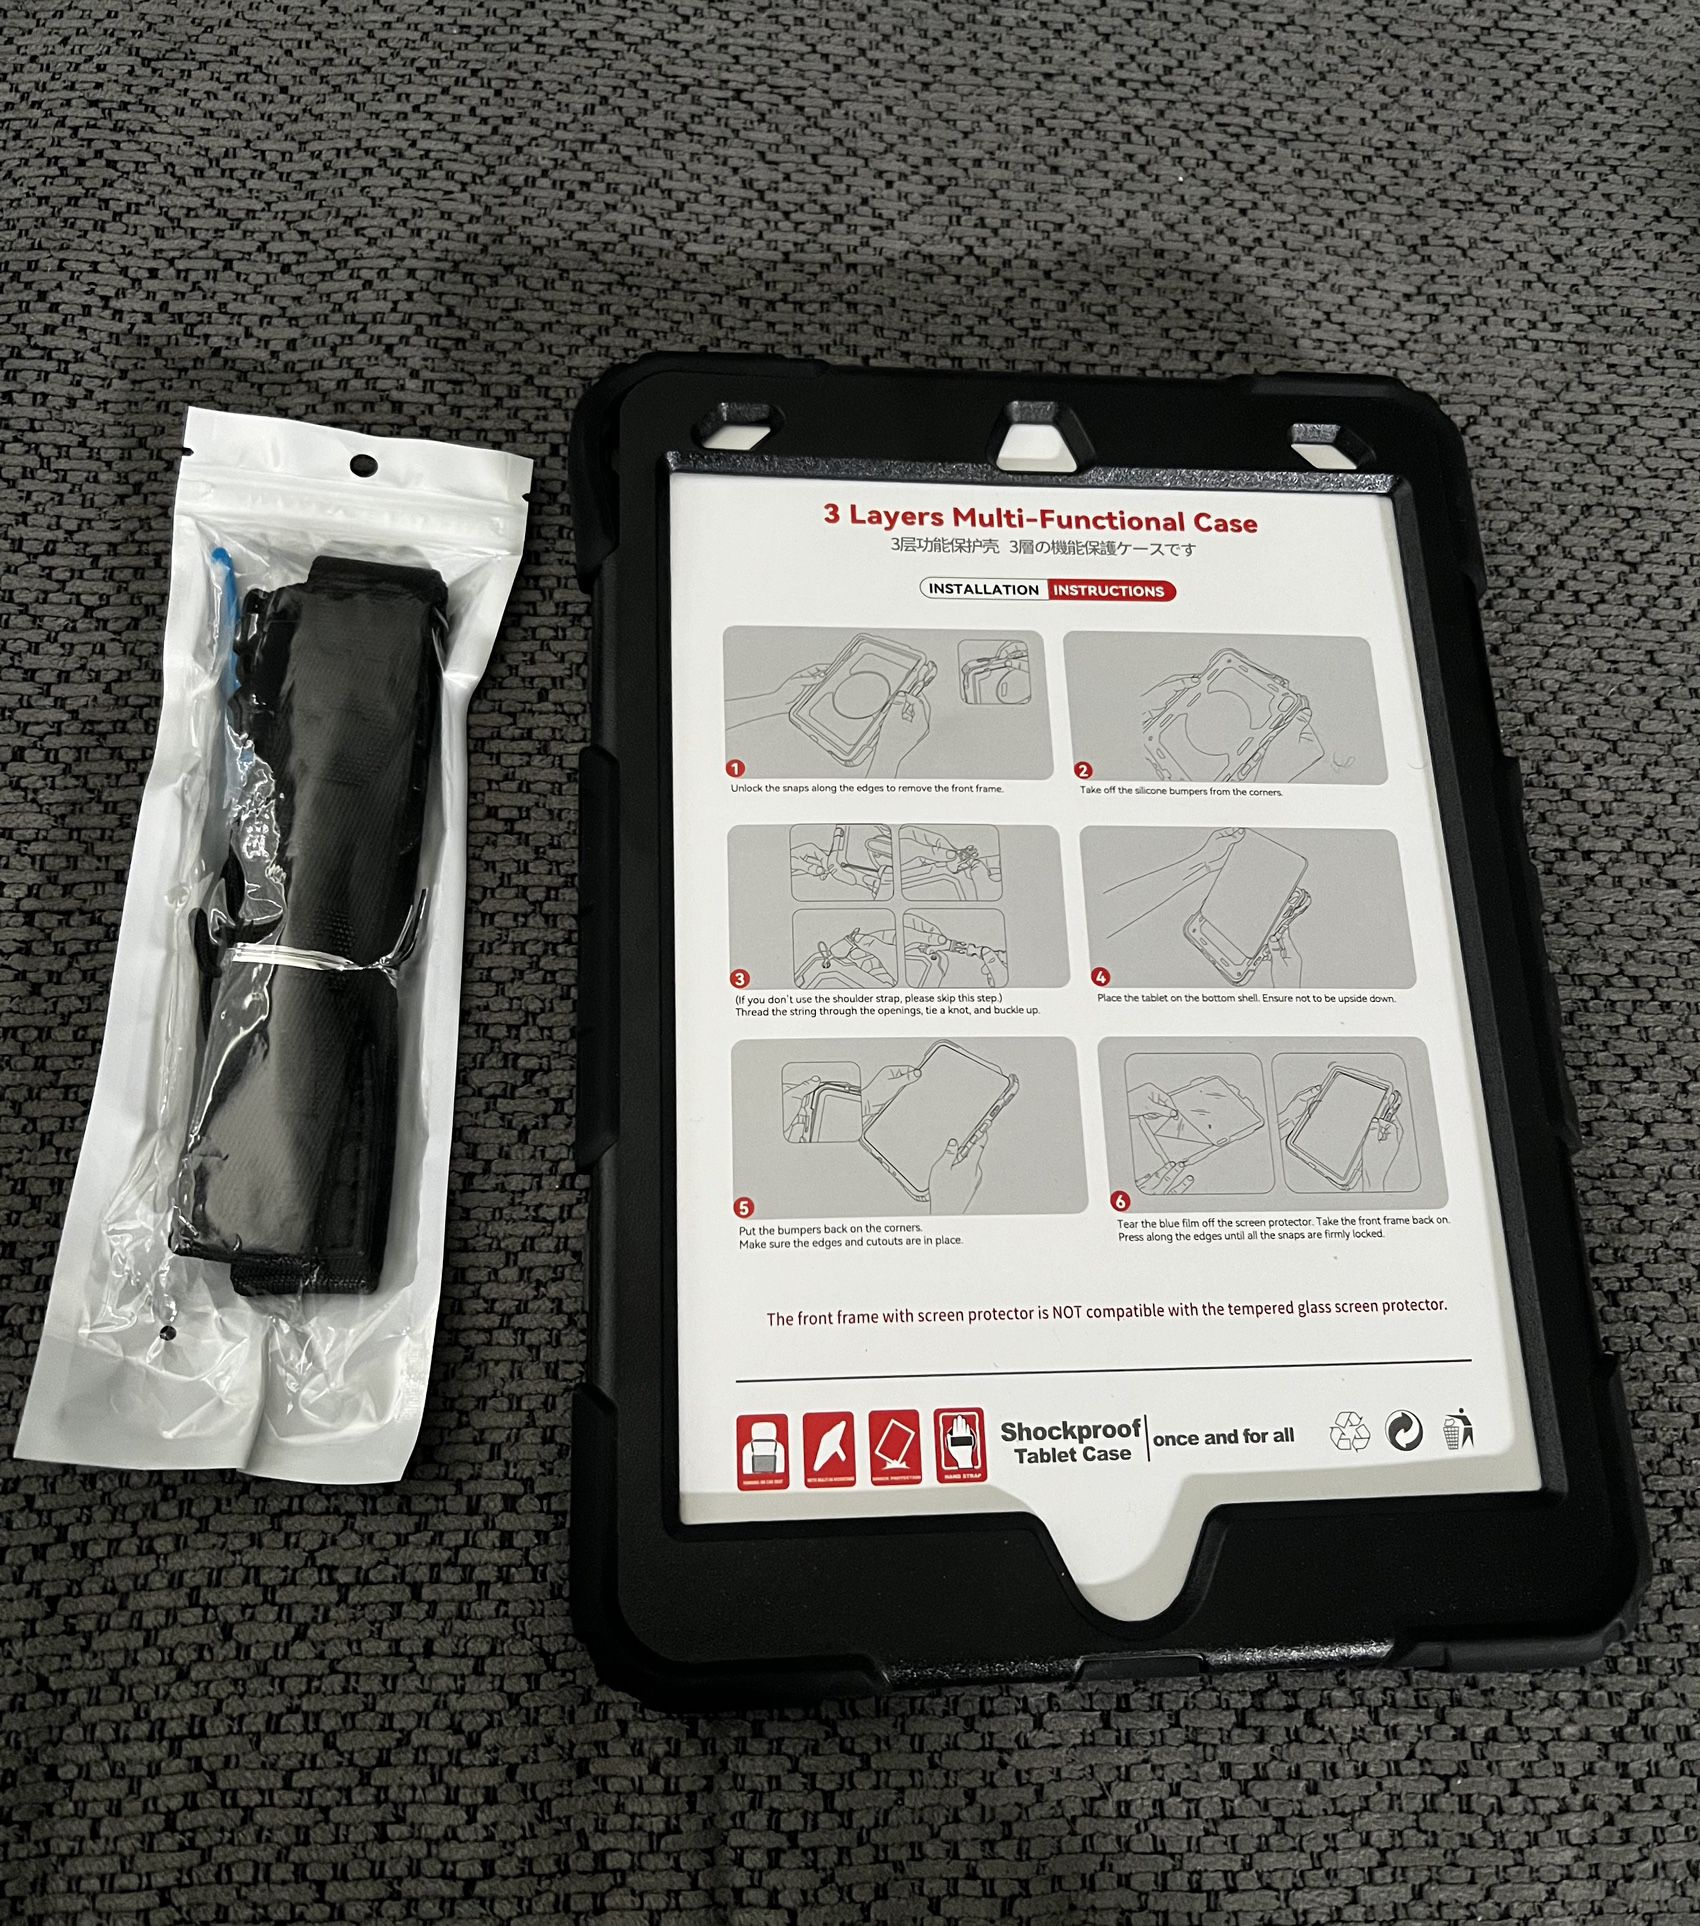 Shockproof Tablet Case